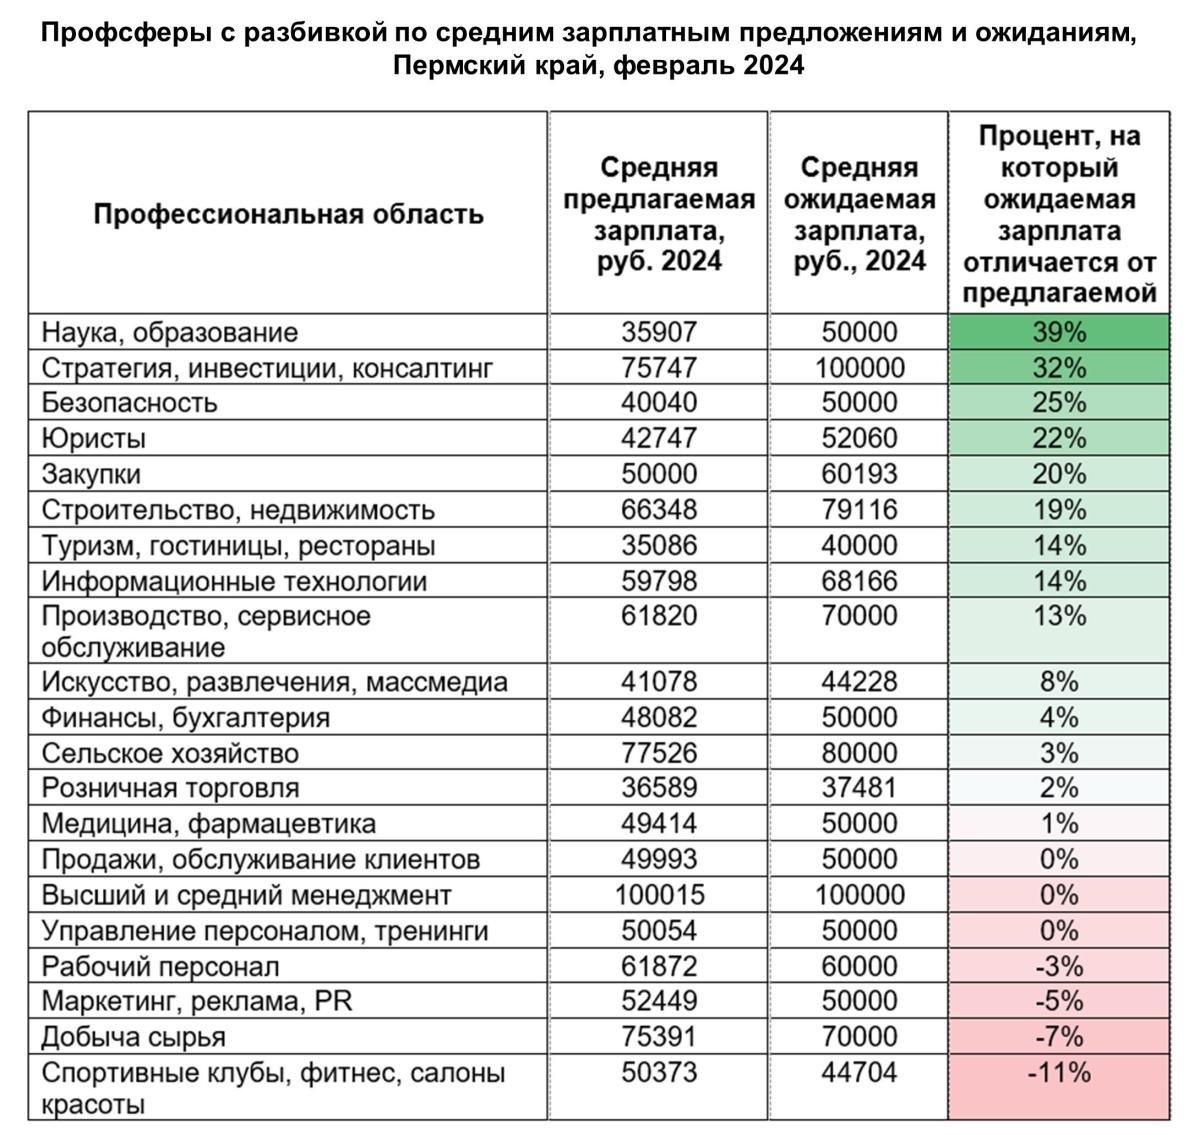 Зарплатные предложения и ожидания в Пермском крае, февраль 2024